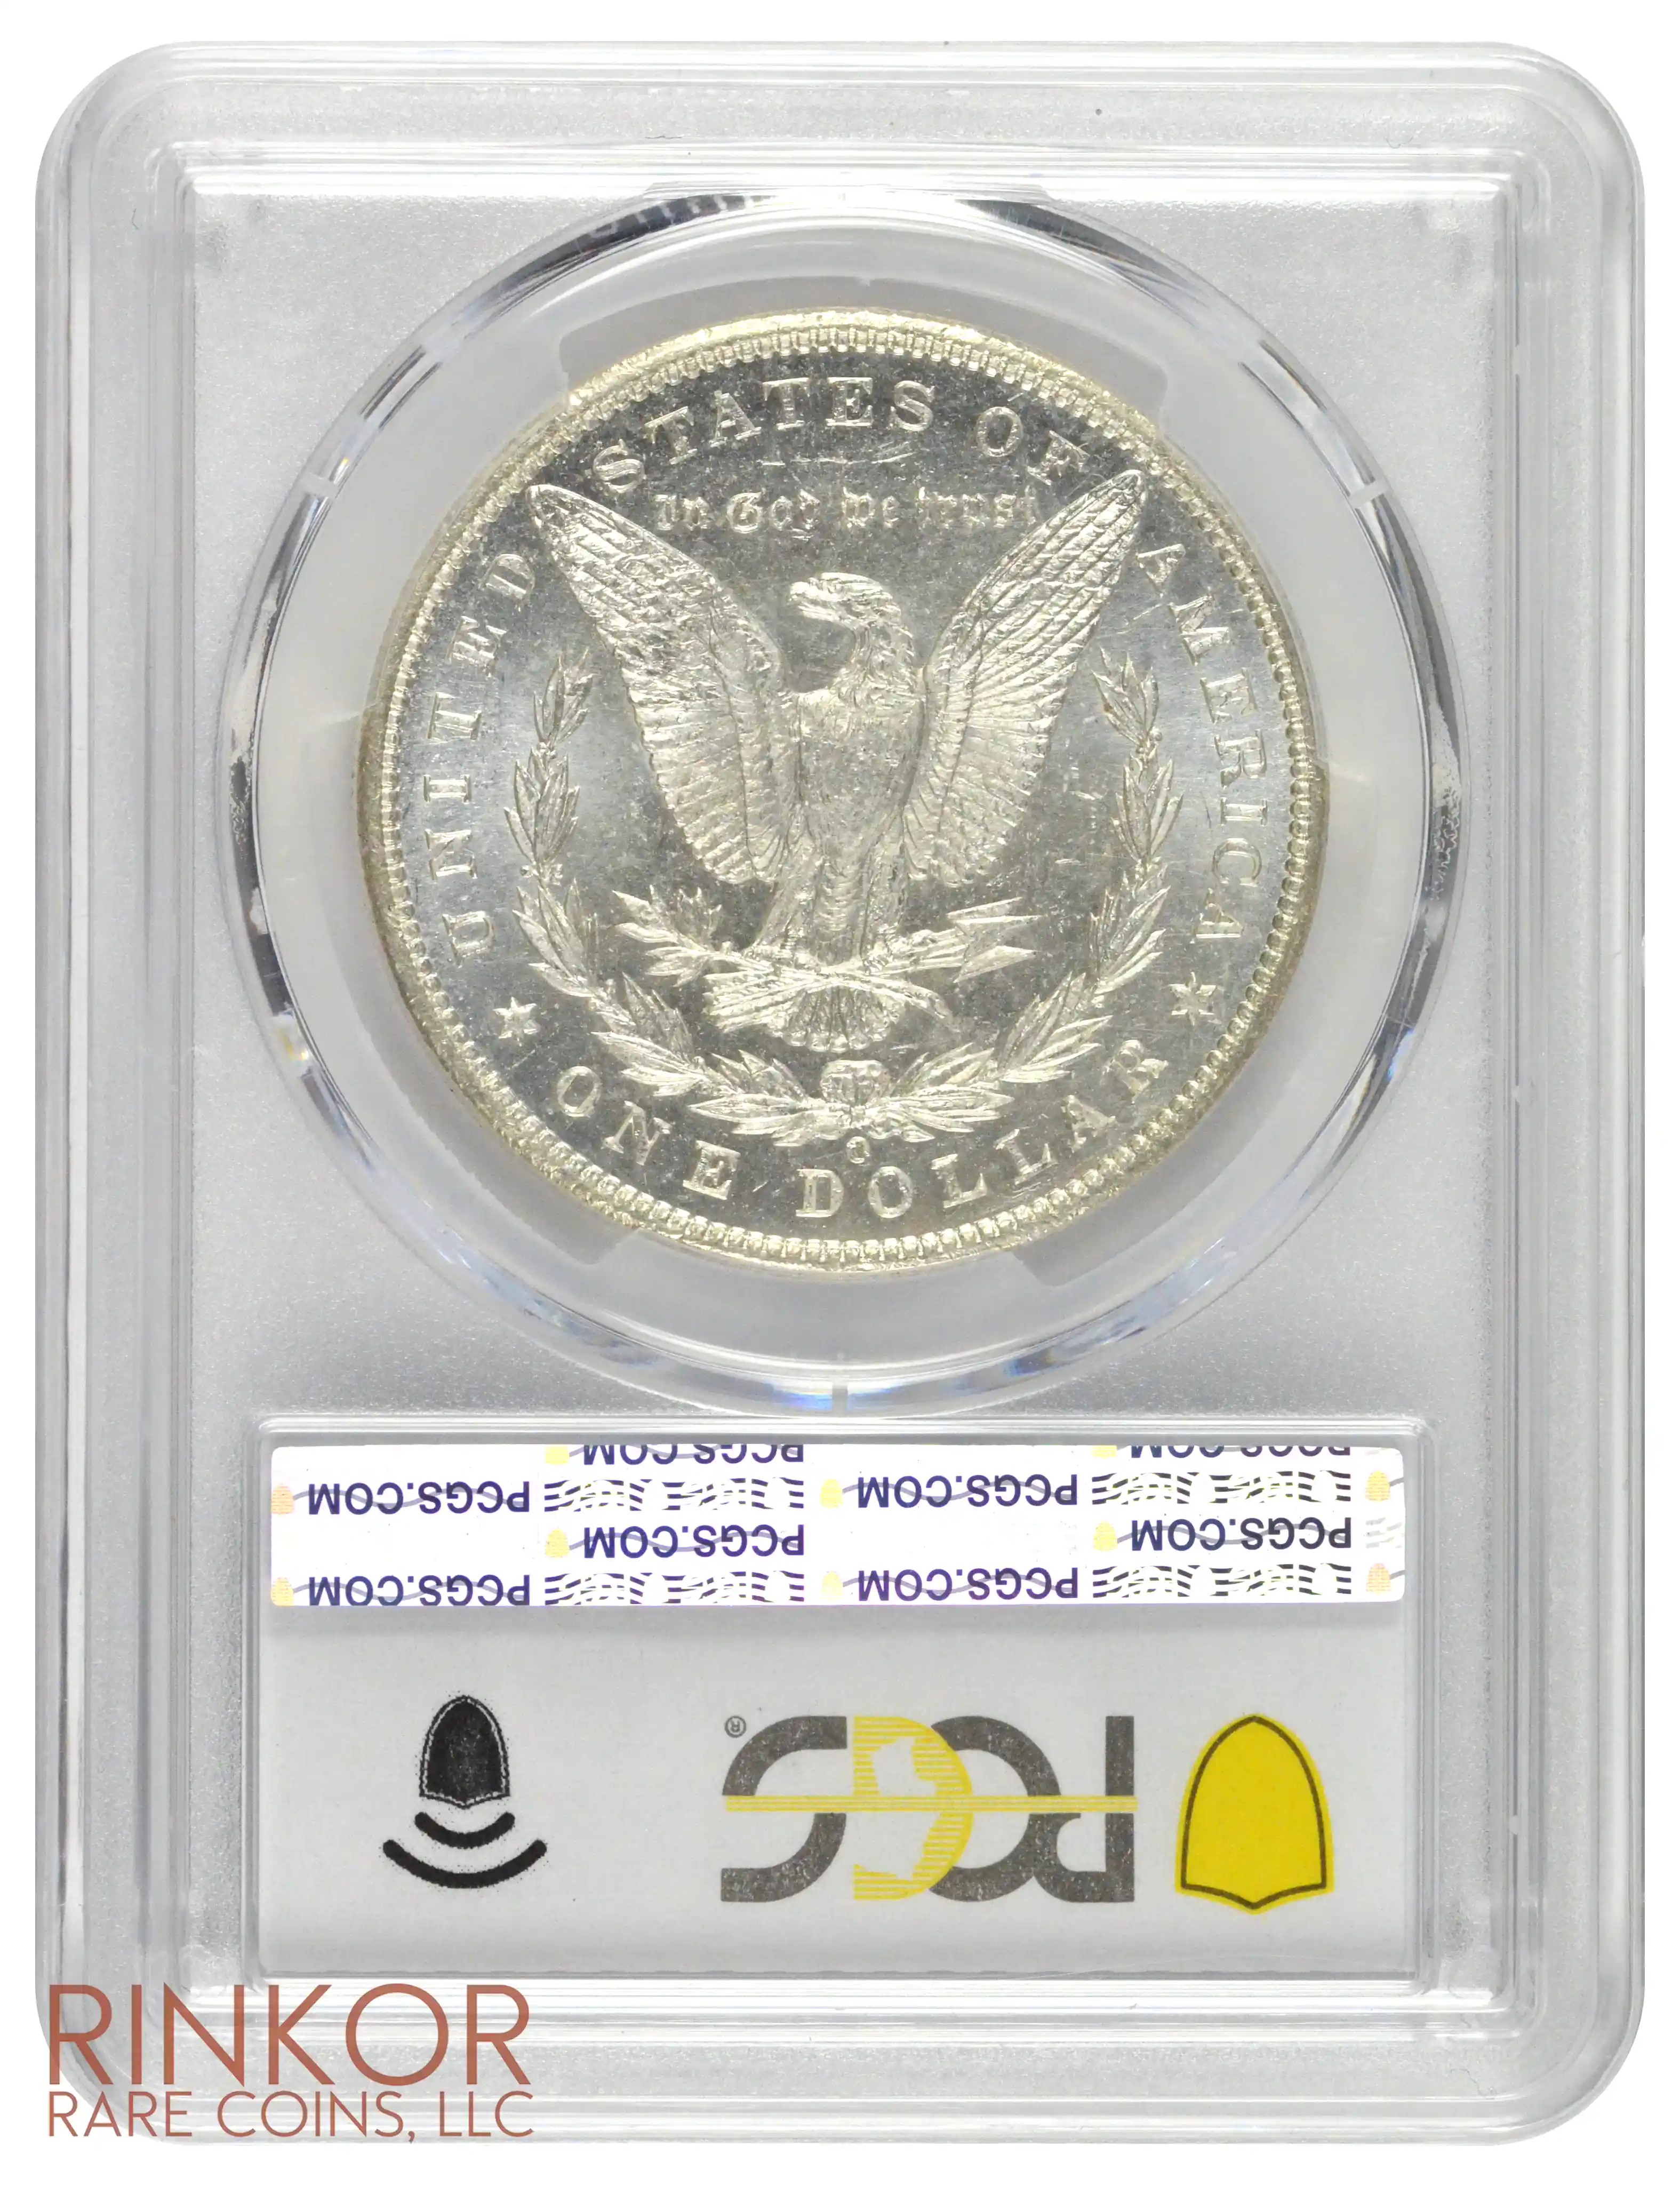 1901-O $1 PCGS MS 65 DMPL